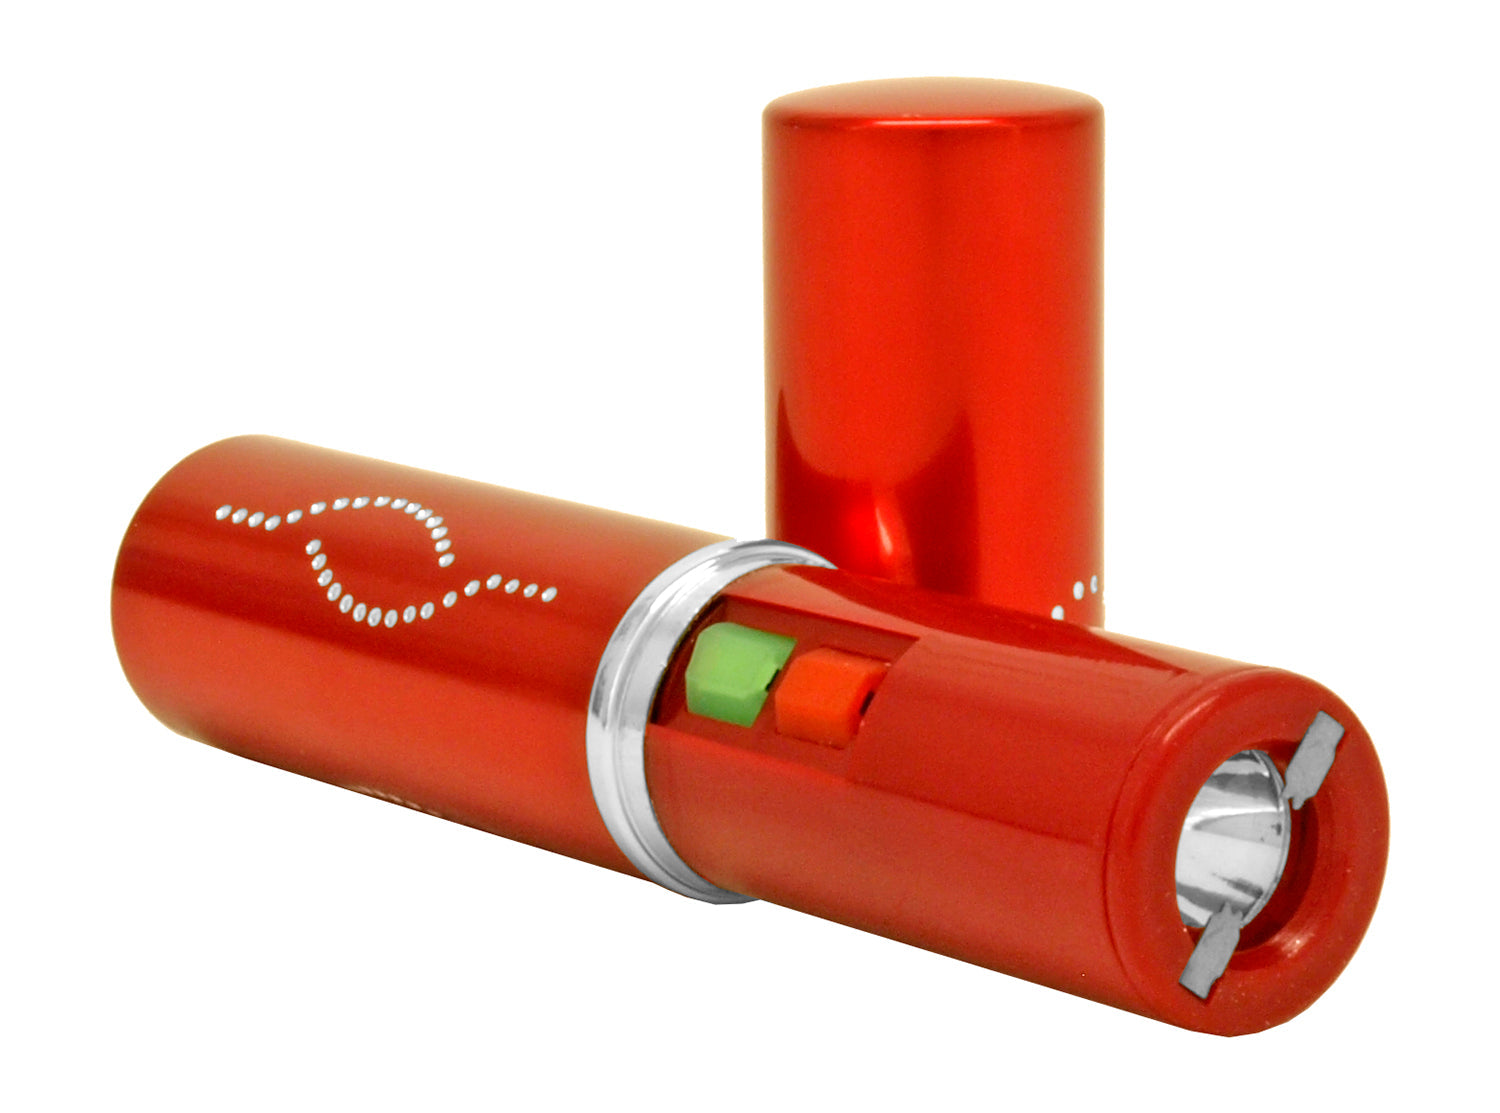 5" Red Lipstick Stungun with Flashlight - Bladevip